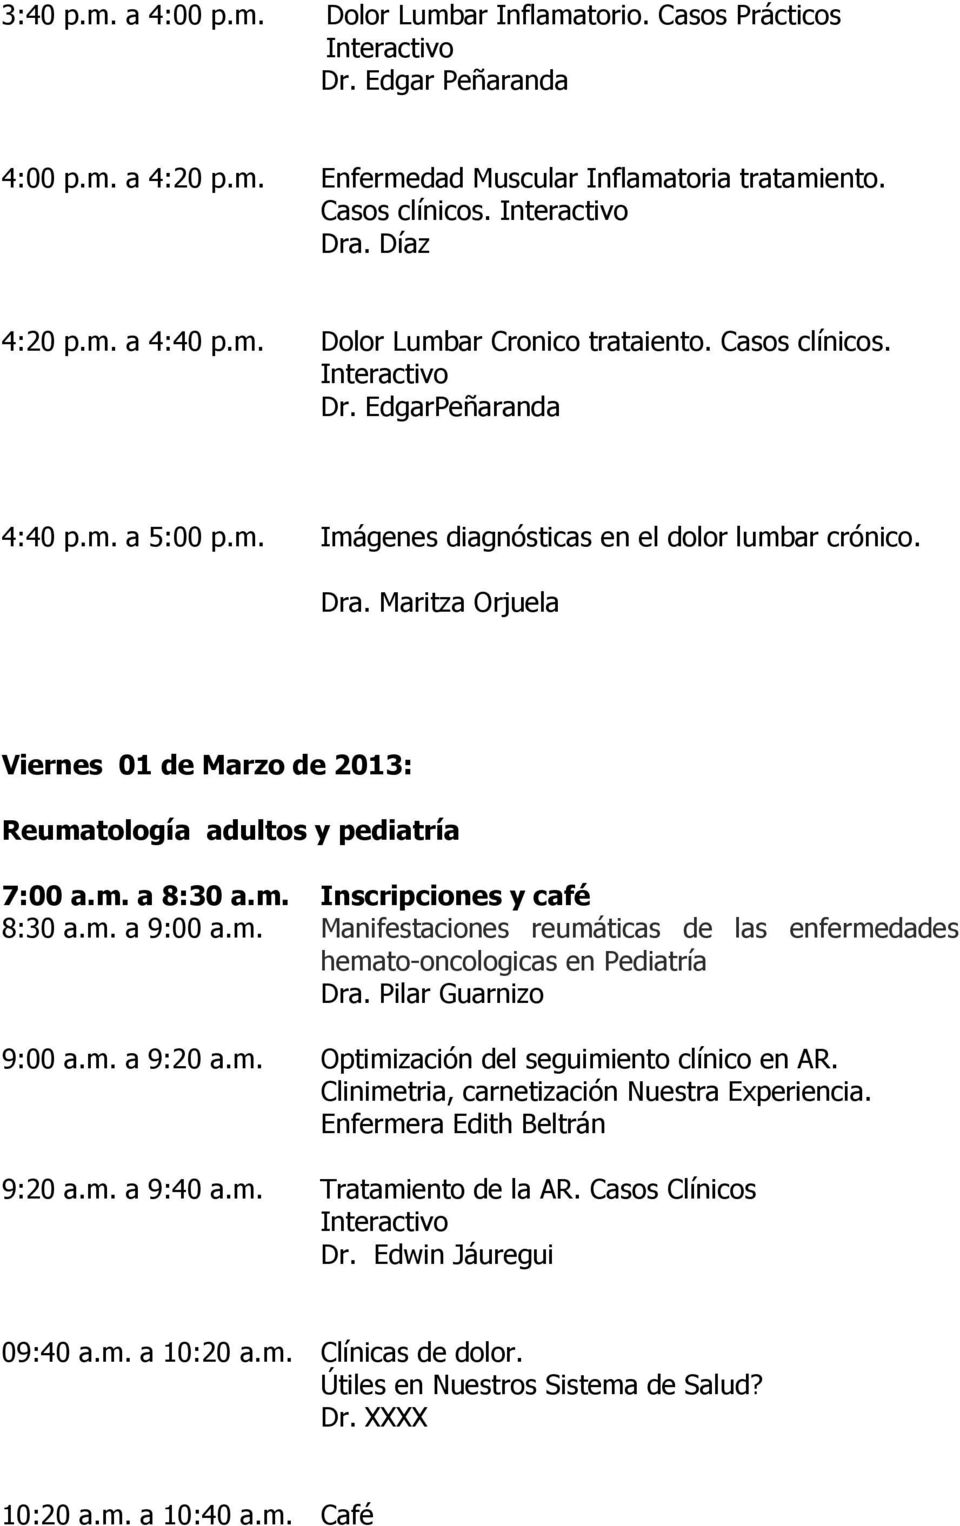 Maritza Orjuela Viernes 01 de Marzo de 2013: Reumatología adultos y pediatría 7:00 a.m. a 8:30 a.m. Inscripciones y café 8:30 a.m. a 9:00 a.m. Manifestaciones reumáticas de las enfermedades hemato-oncologicas en Pediatría Dra.